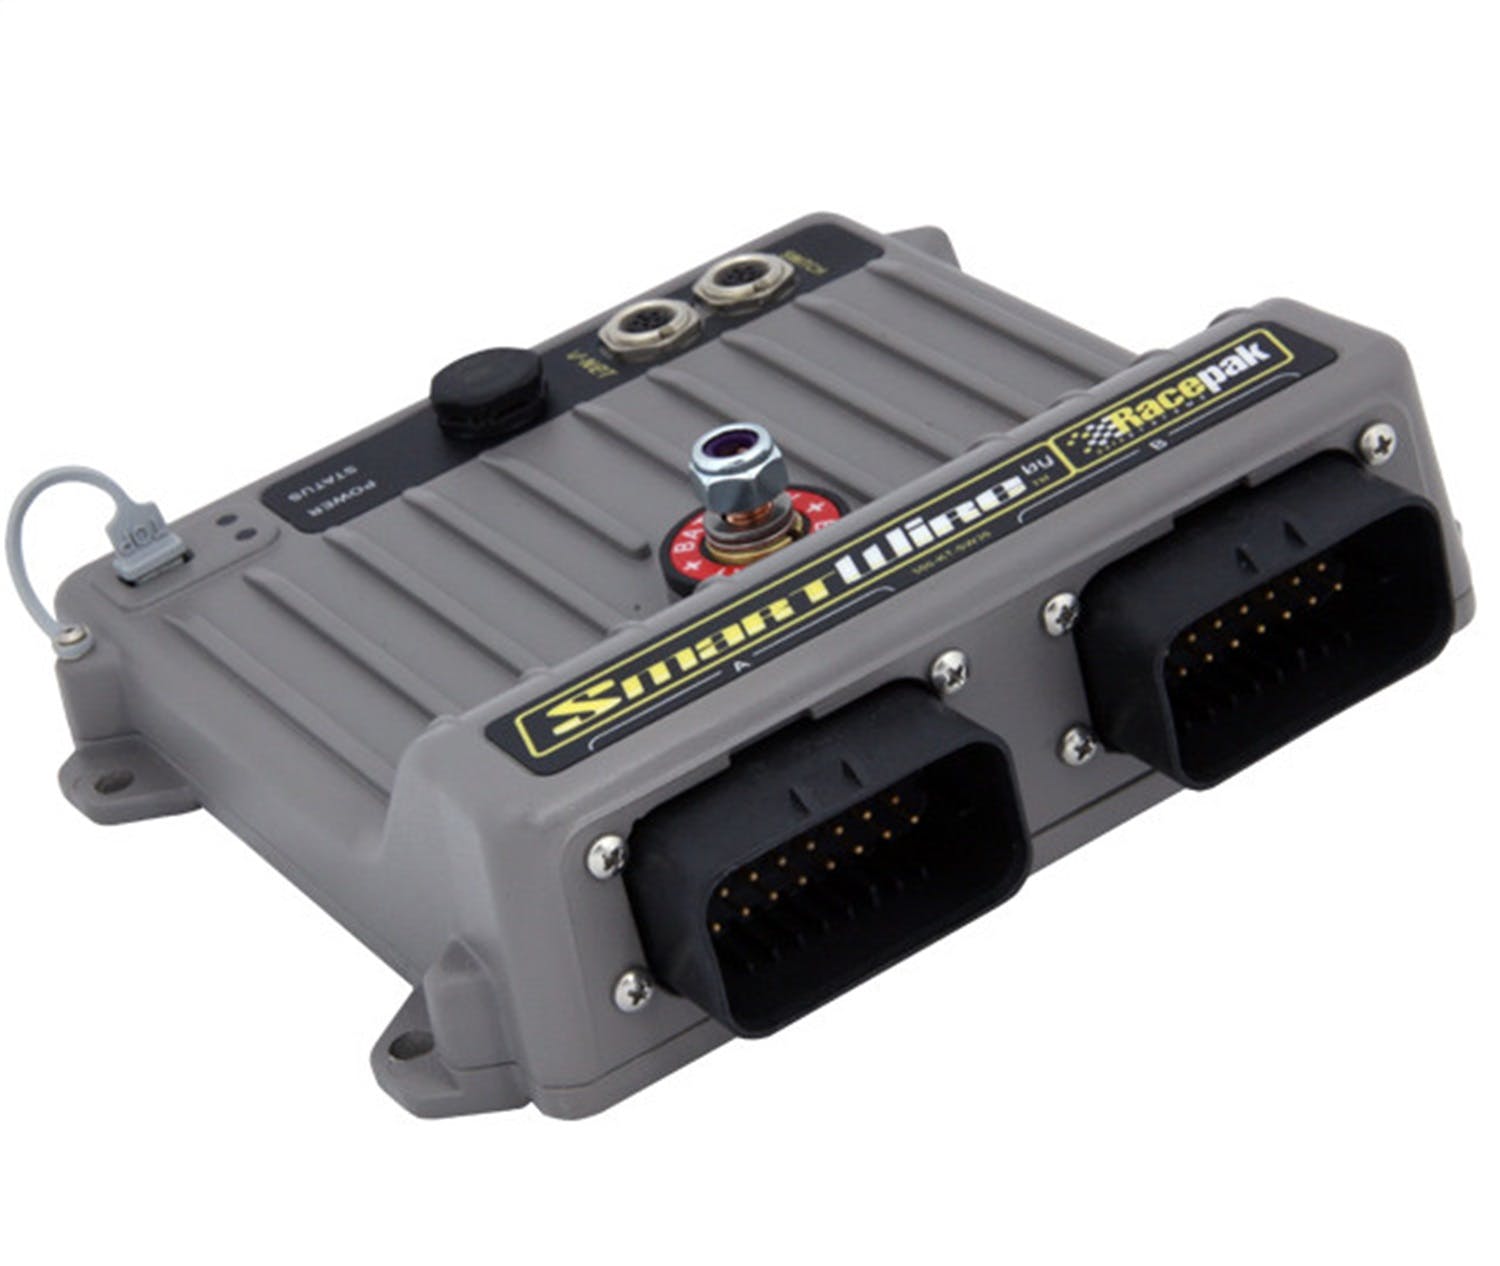 Racepak 500-KT-SW30 SmartWire Power Control Module